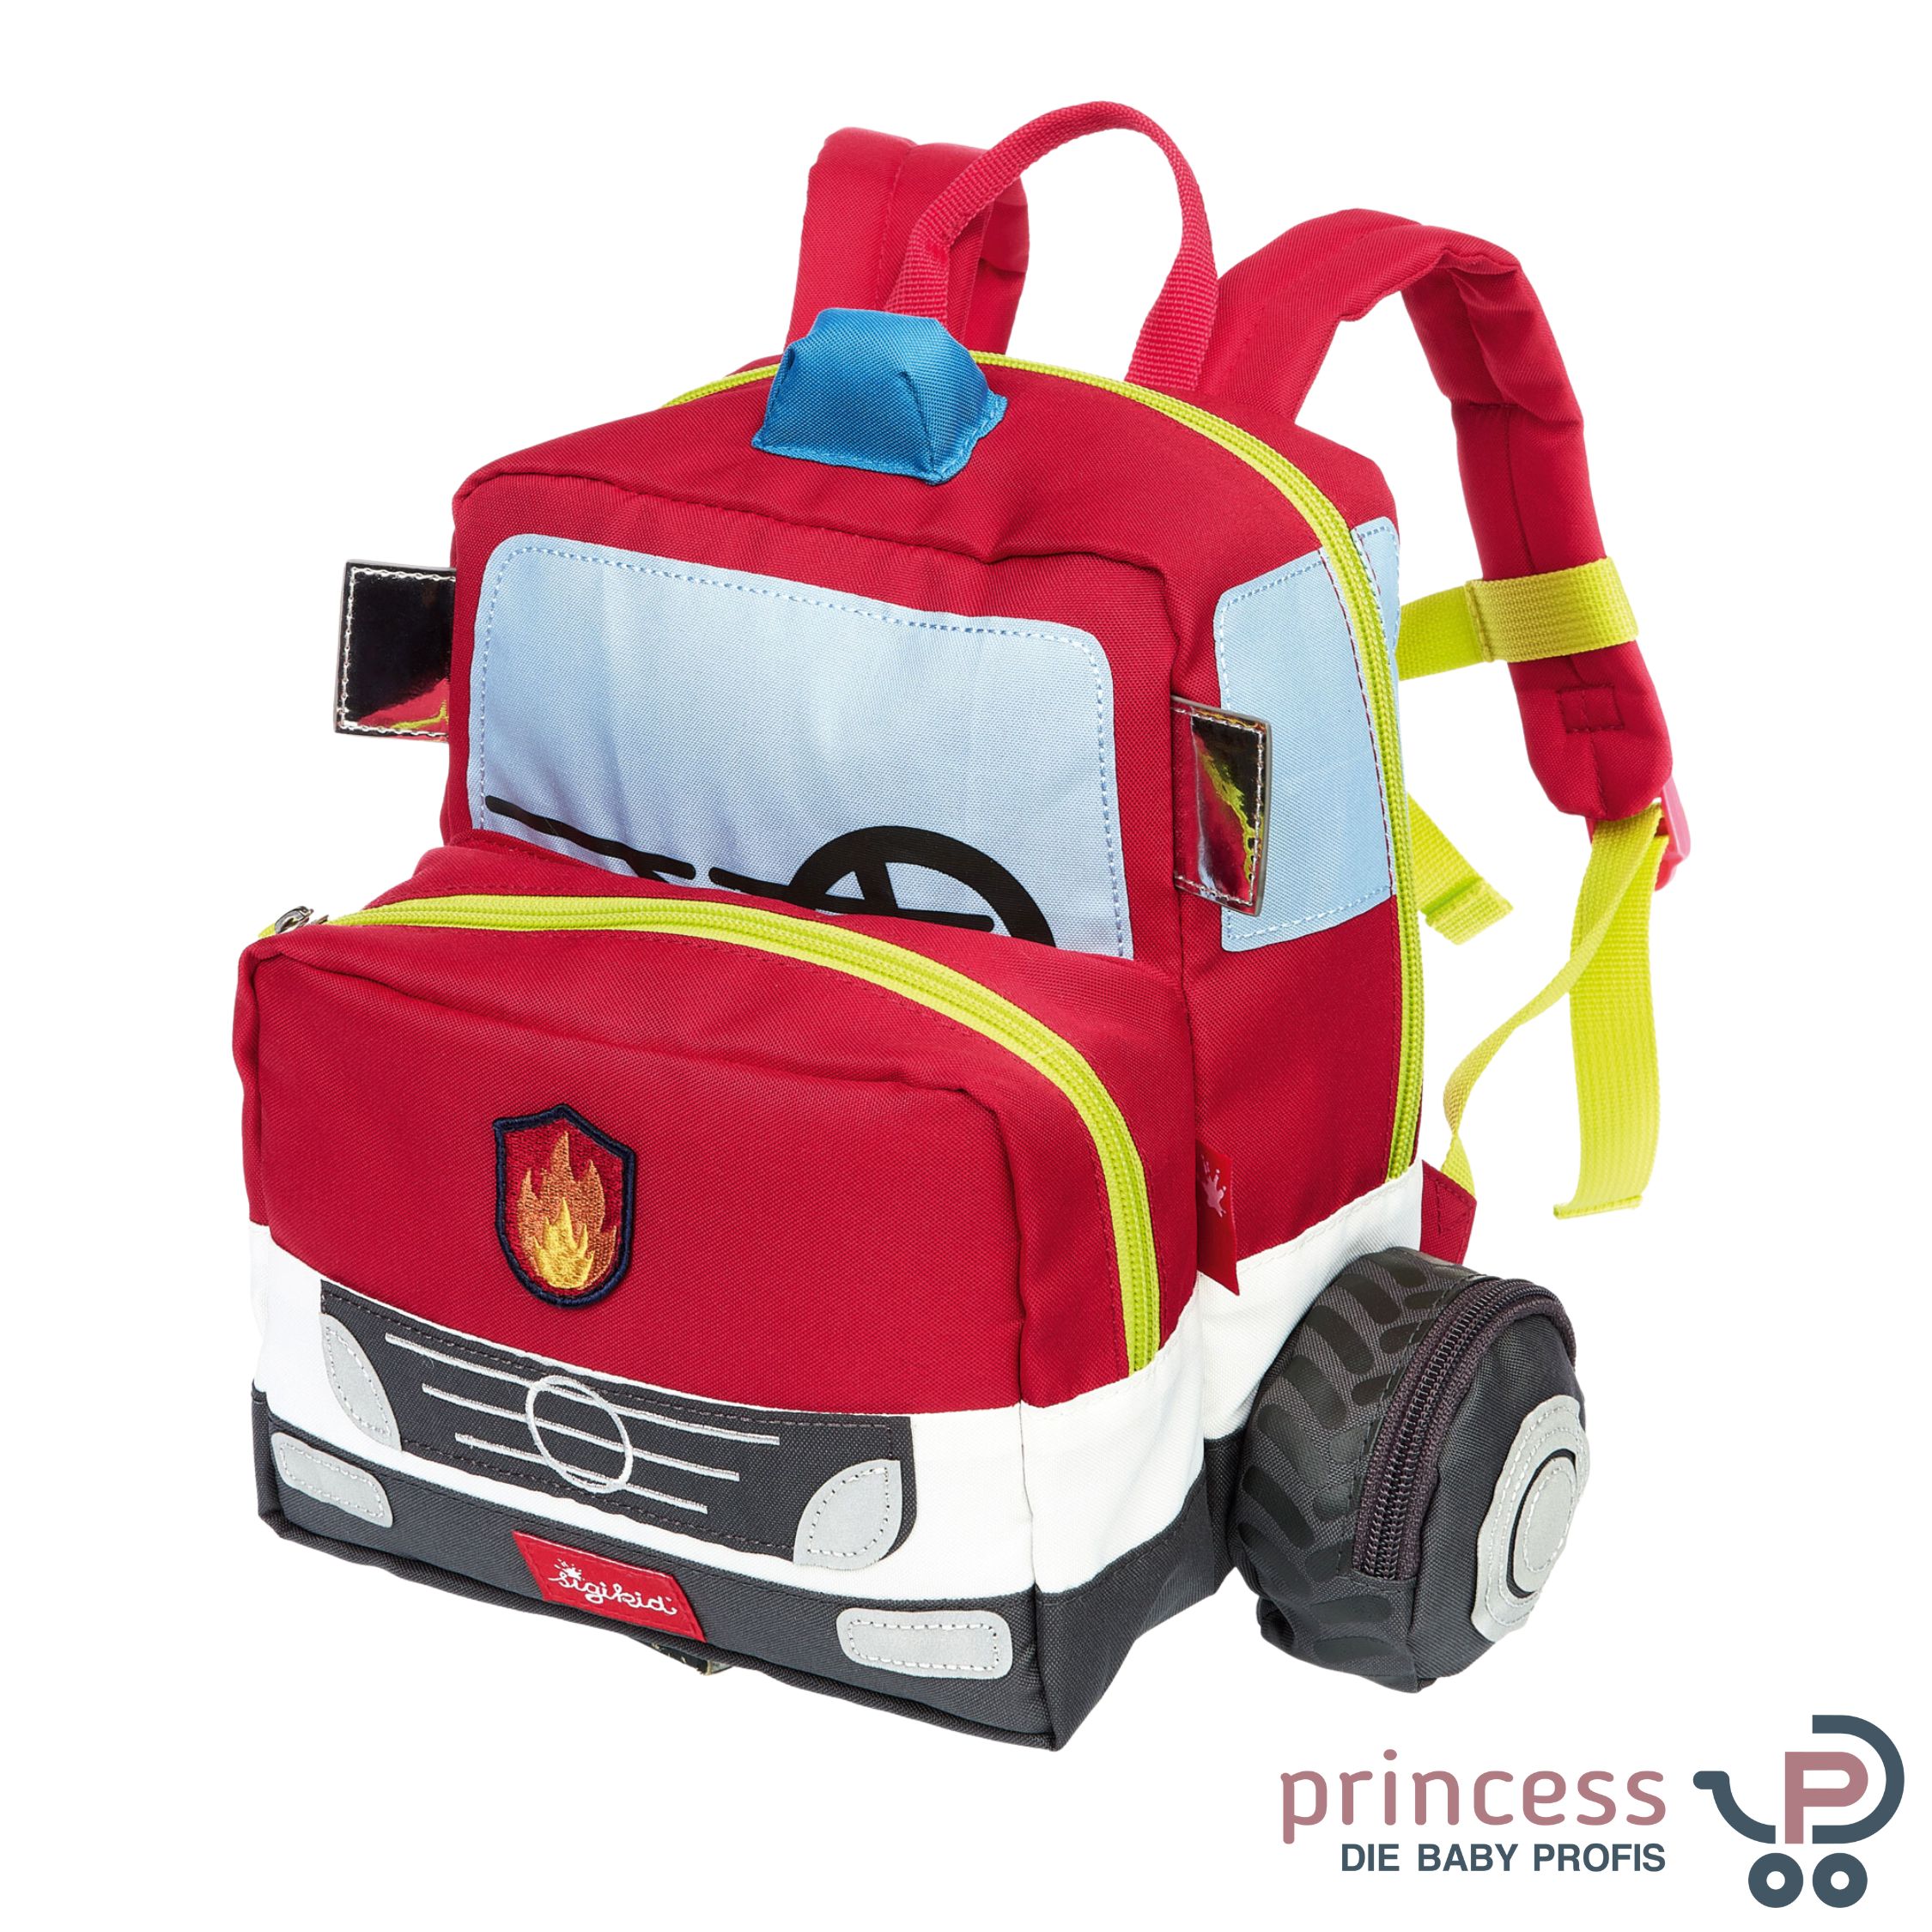 Sigikid Kinderrucksack Feuerwehrauto - Princess Kinderwagen Onlineshop